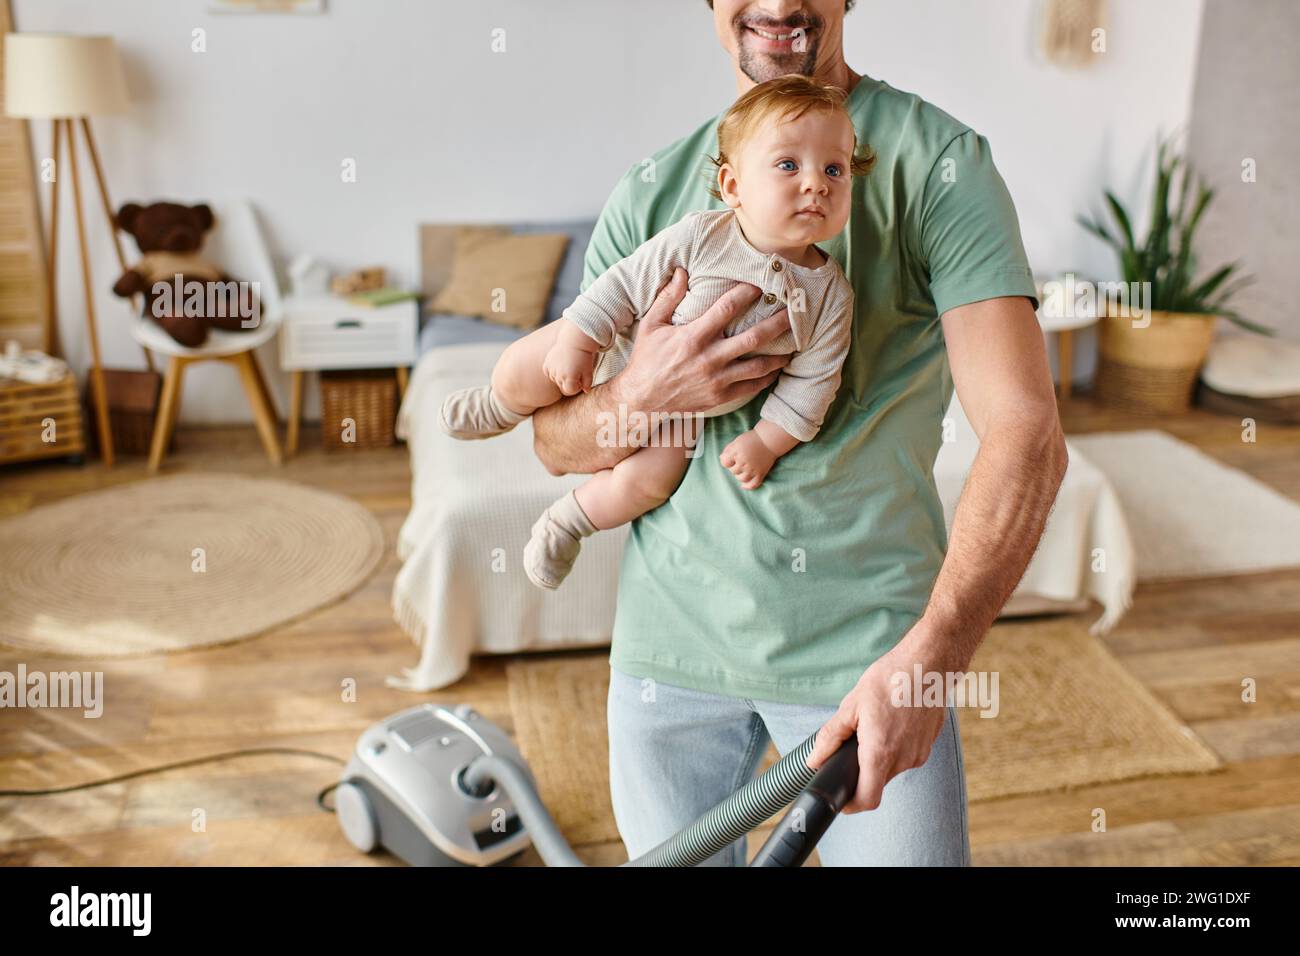 Ein zugeschnittener Mann, der Hausarbeit und Kinderbetreuung betreibt, ein glücklicher Vater, der mit einem Sohn in den Armen ein Haus saugt Stockfoto